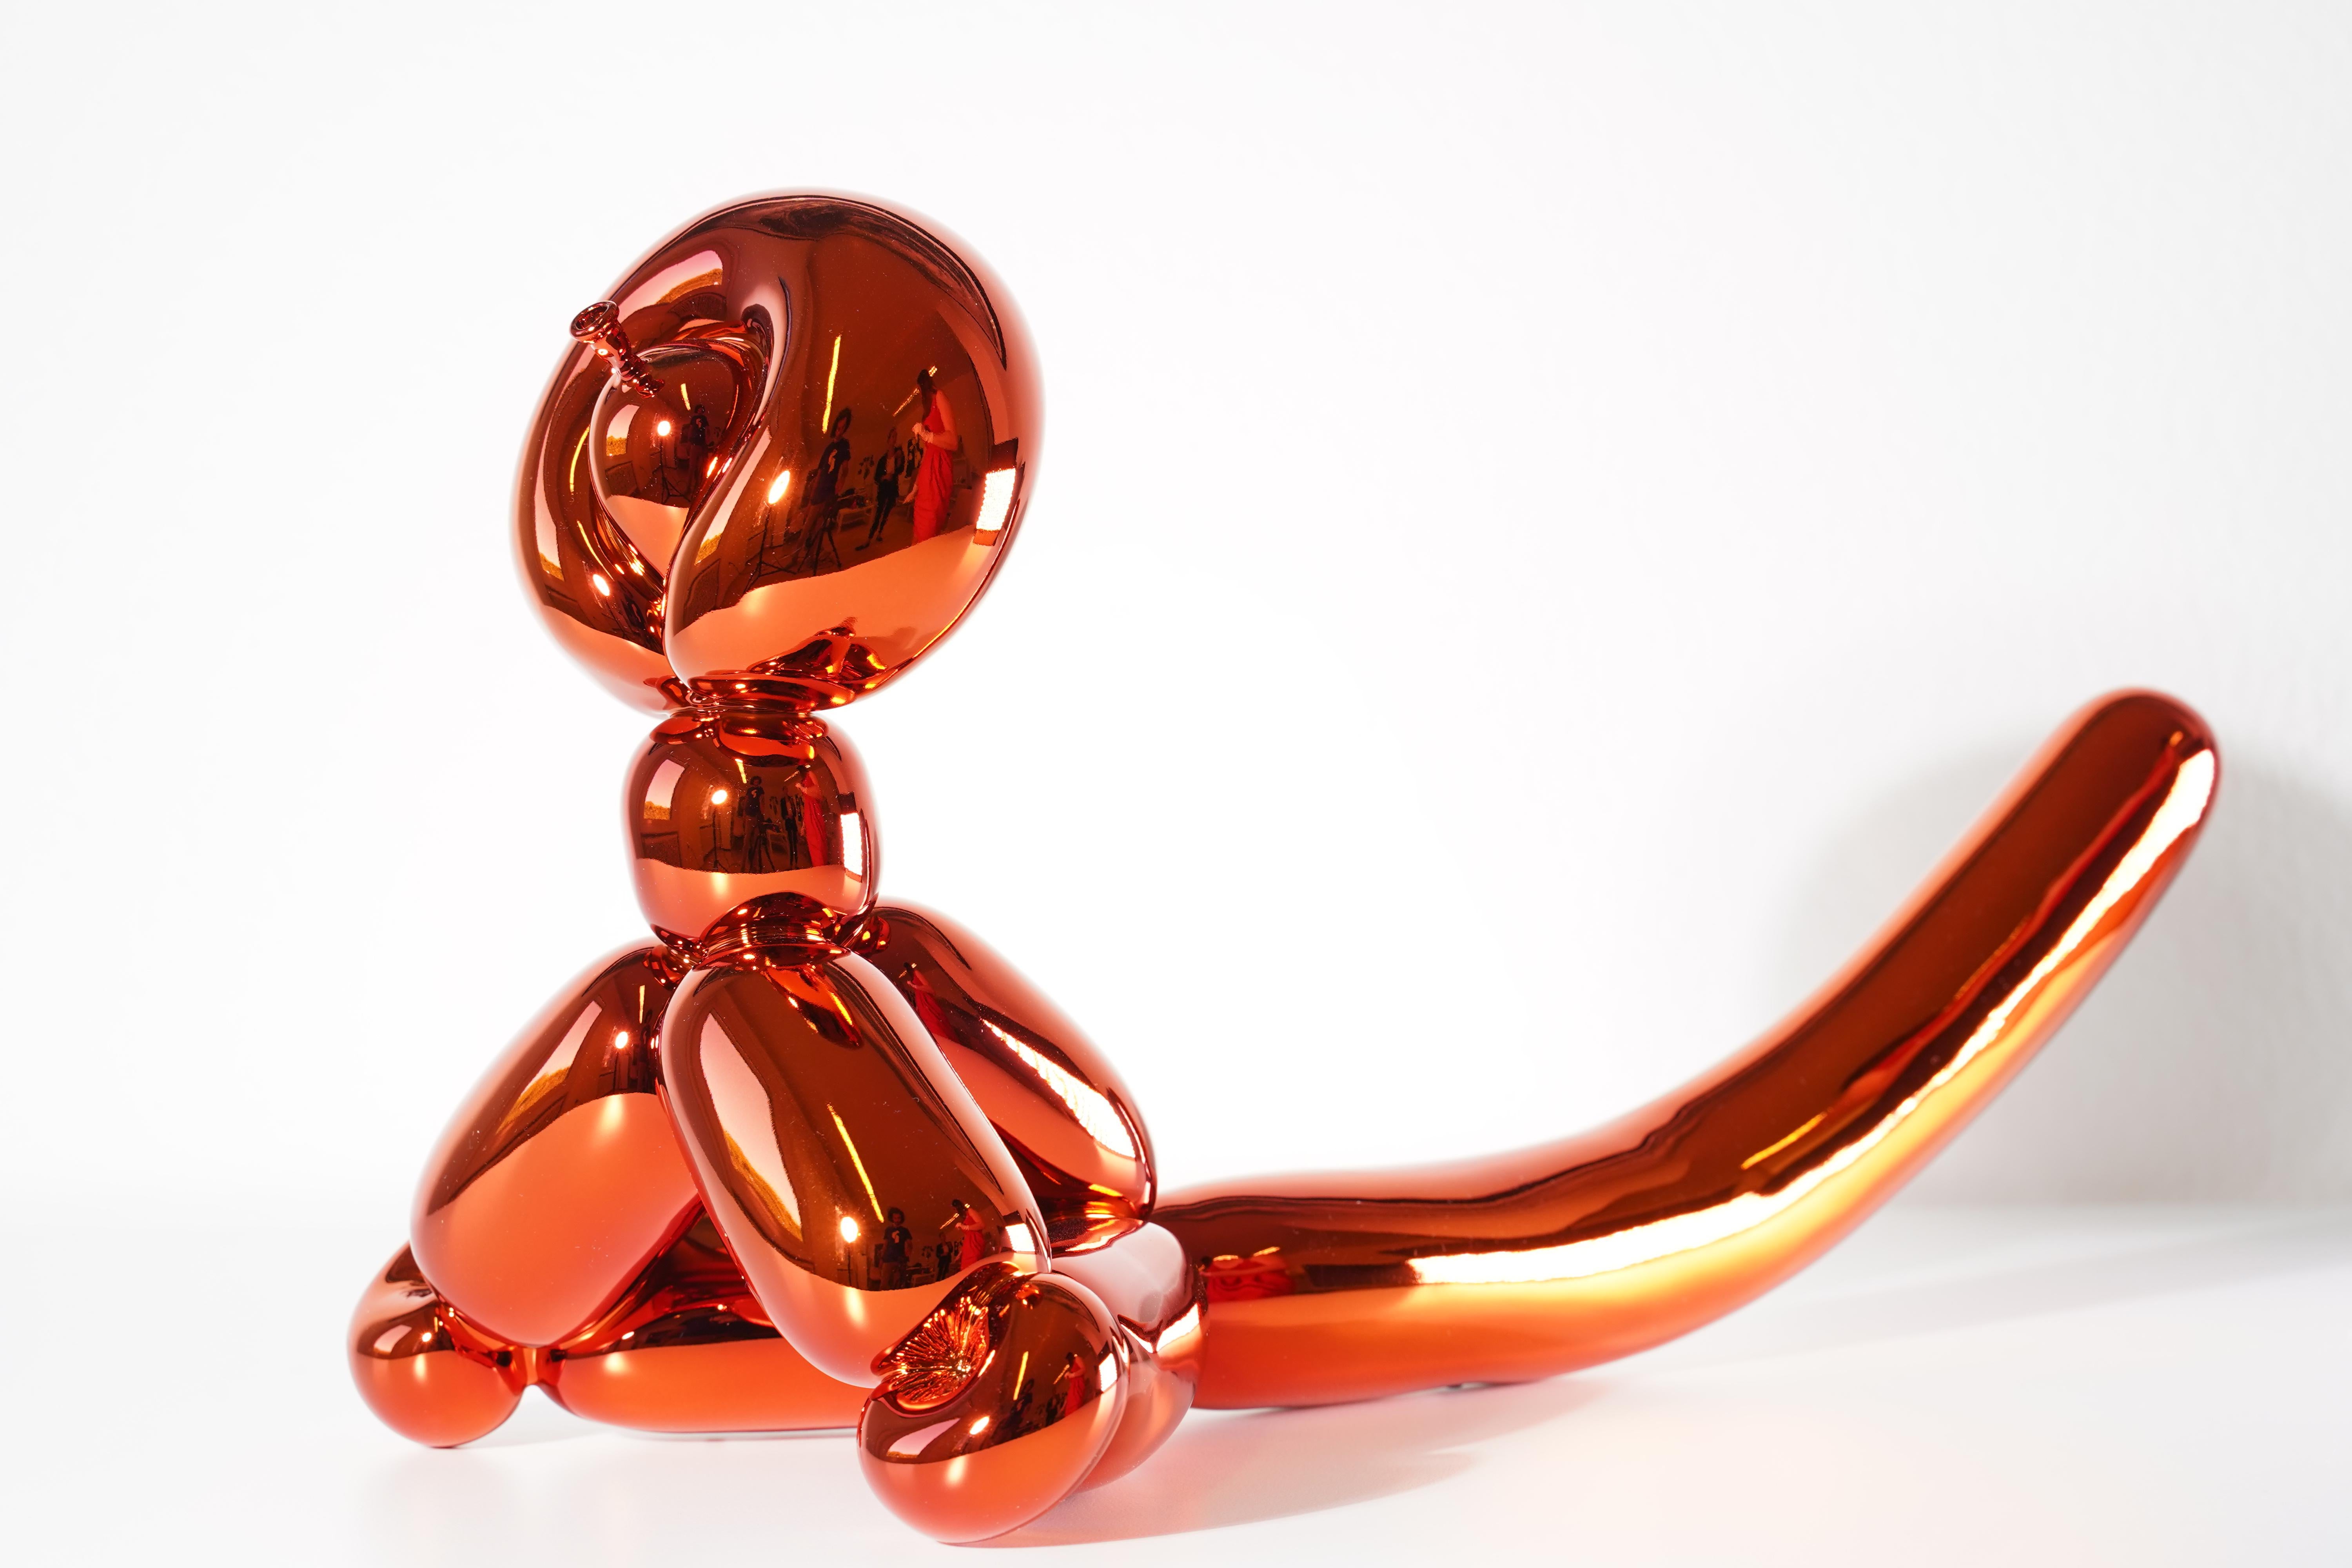 Balloon Monkey (Orange) - Jeff Koons, 21ème siècle, Contemporain, Porcelaine, Sculpture, Décor, Edition limitée

Porcelaine de Limoges avec revêtement chromatique métallisé
Edition de 999
Signé et numéroté
En parfait état, tel qu'il a été acheté